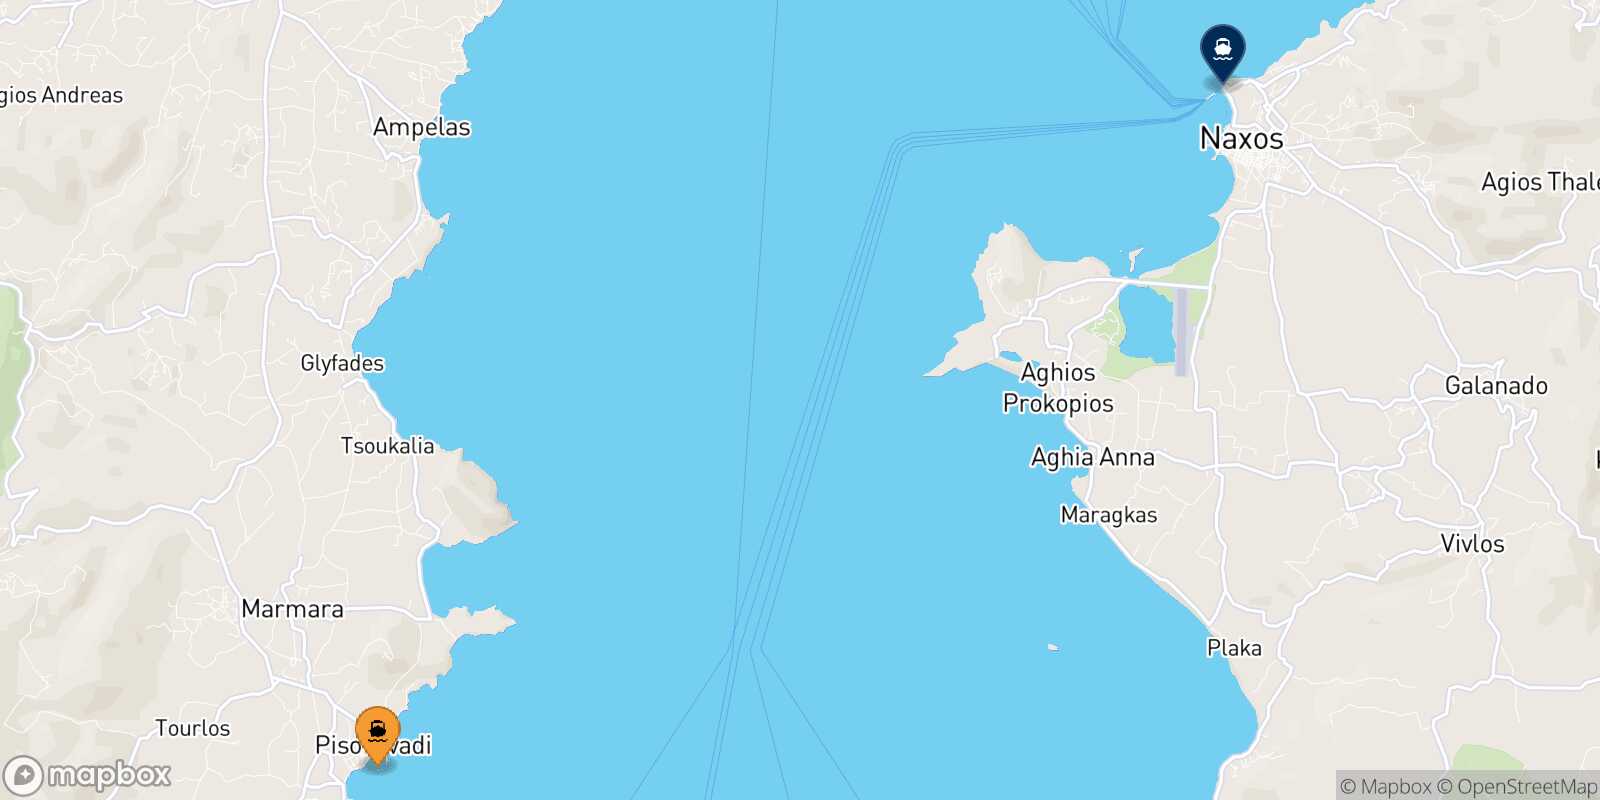 Mappa della rotta Piso Livadi (Paros) Naxos